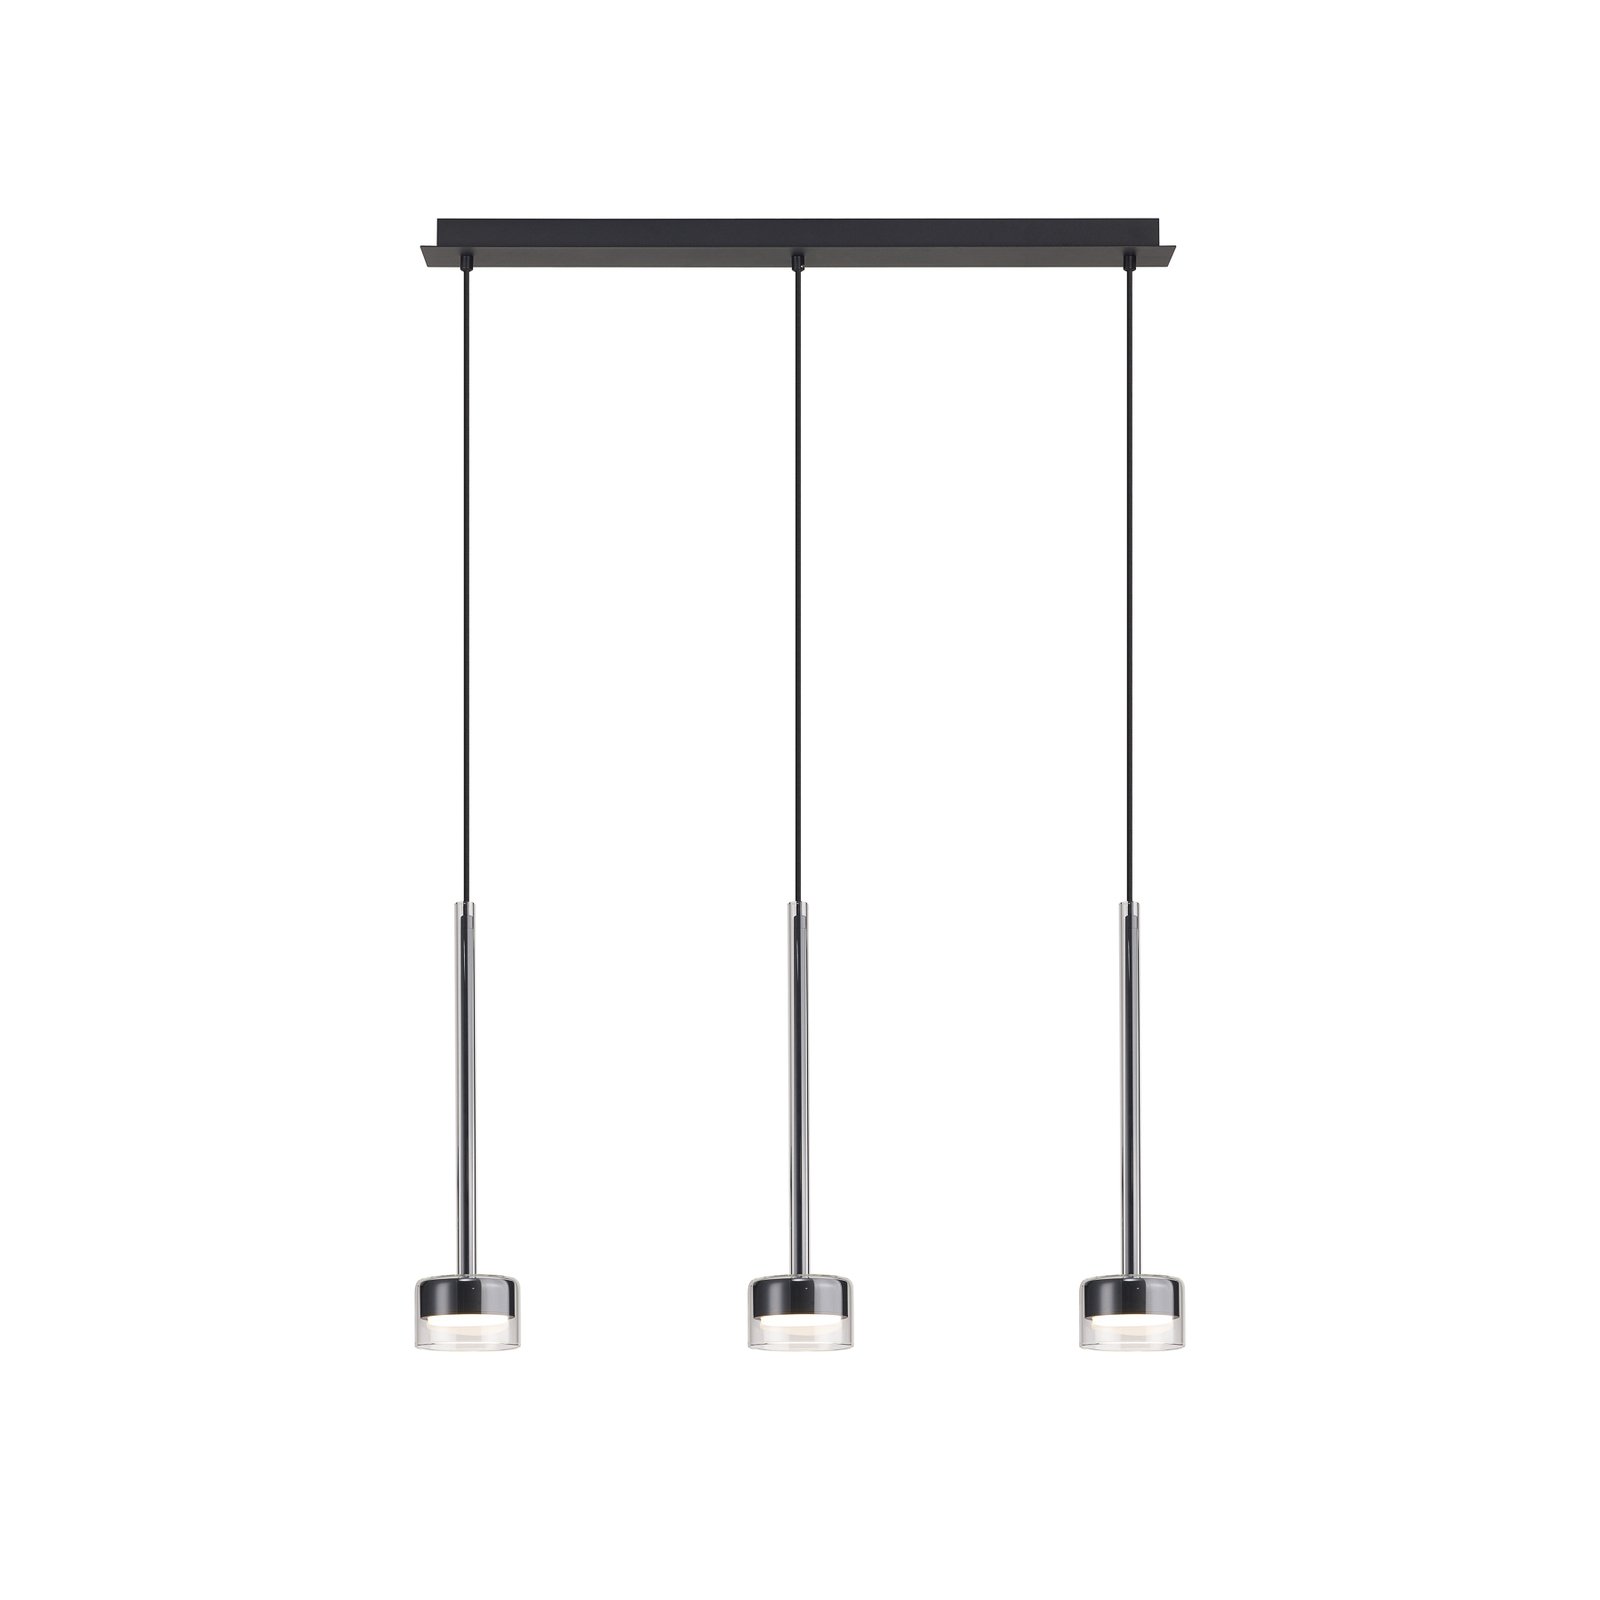 Tonic hanglamp, zwart/helder, bundel, 3-lamps, metaal, glas